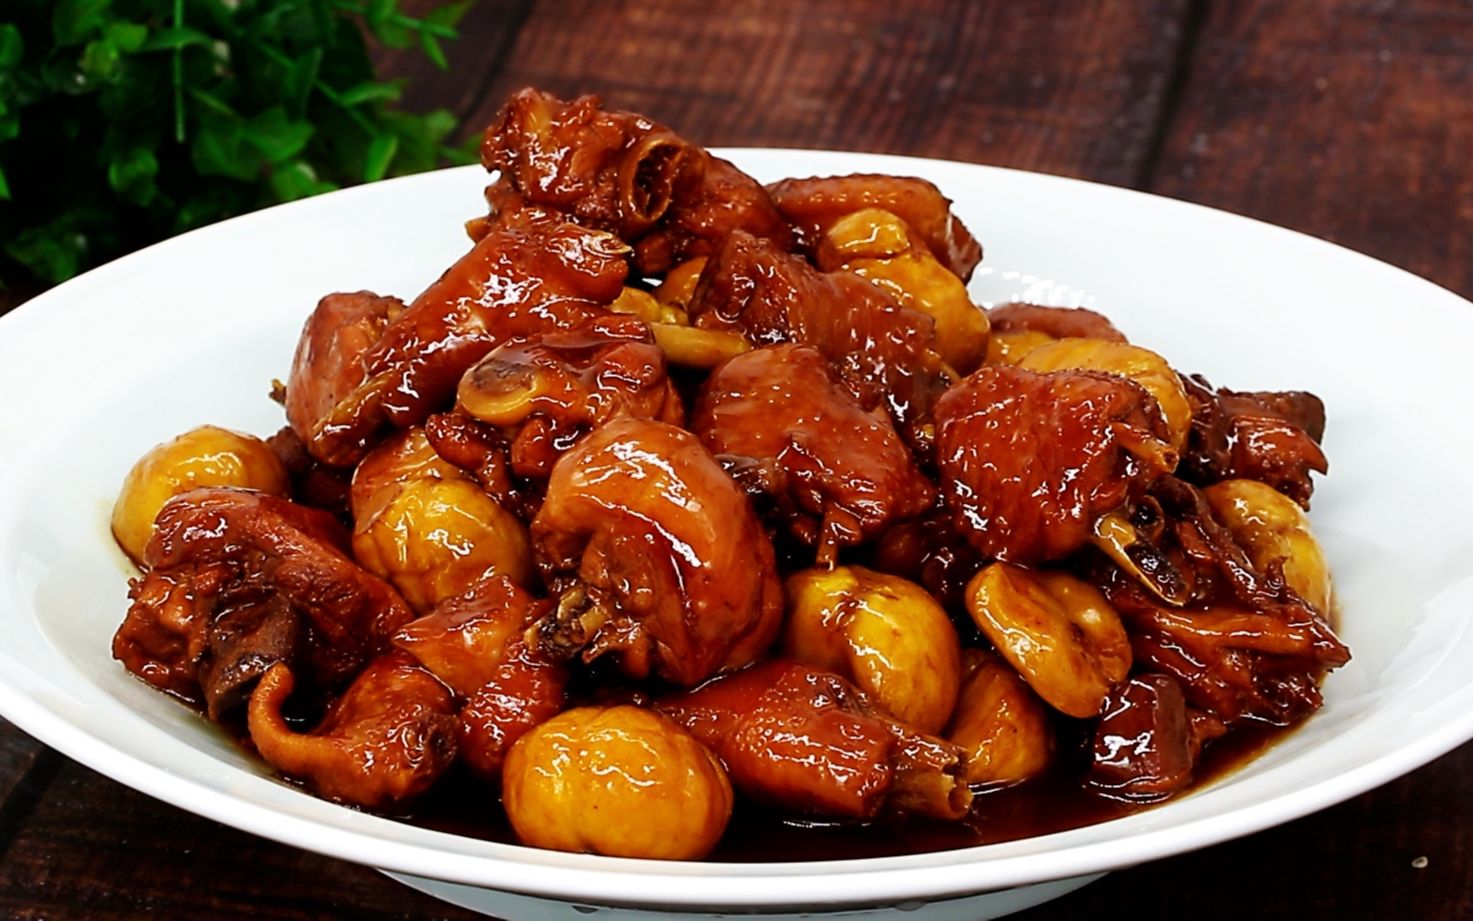 板栗香菇烧鸡,板栗香菇烧鸡的家常做法 - 美食杰板栗香菇烧鸡做法大全